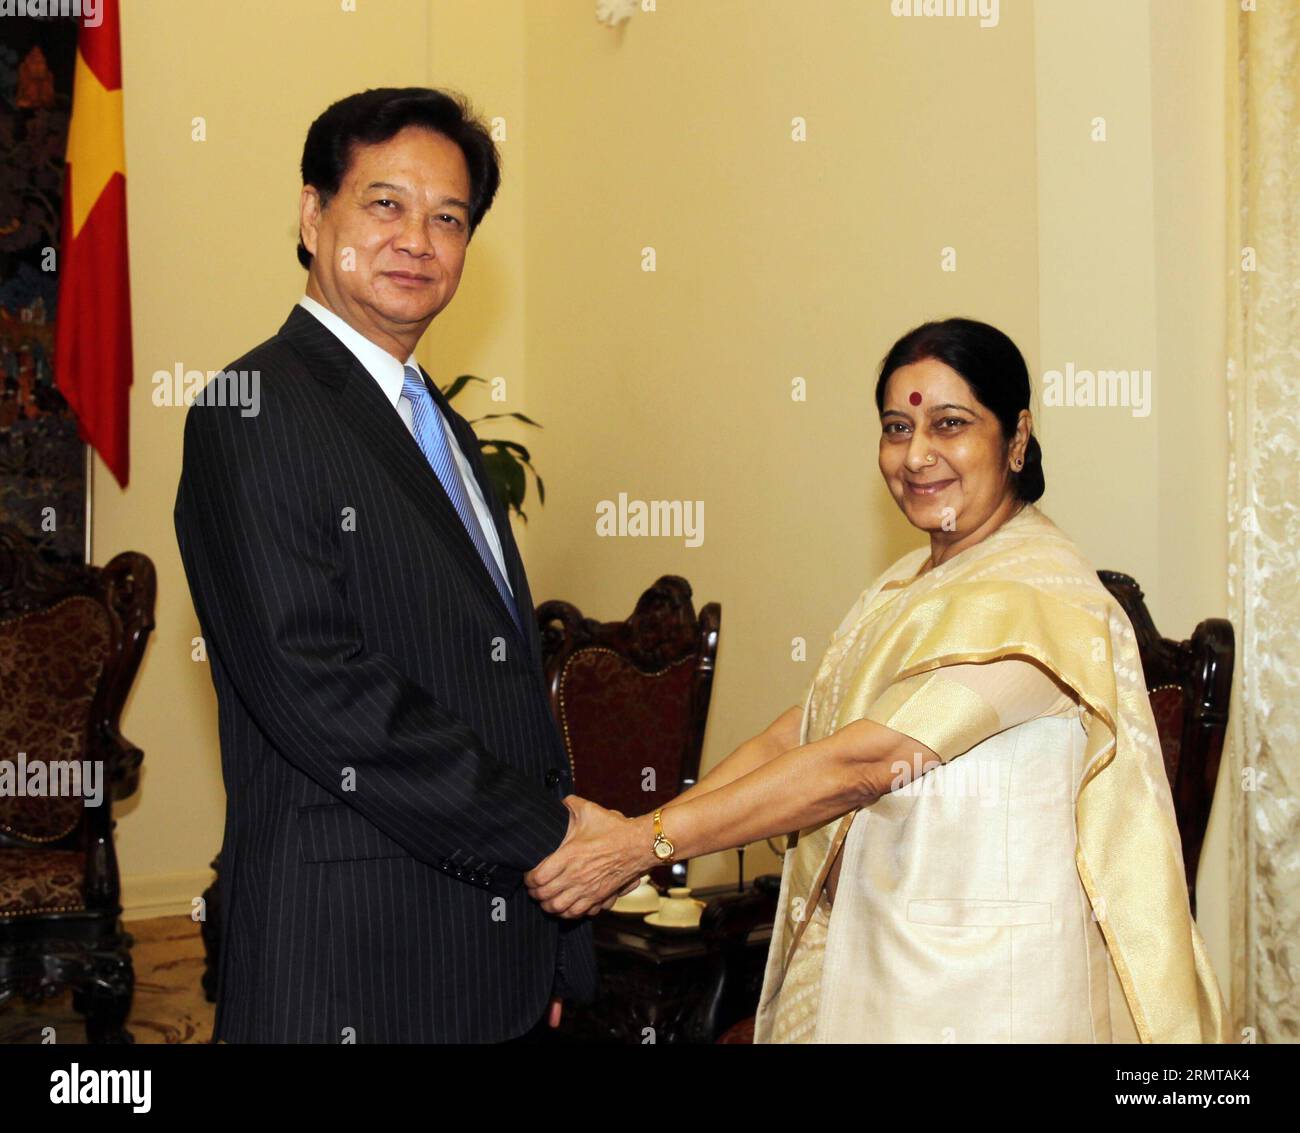 (140825)-- HANOI, 25. August 2014 -- der vietnamesische Premierminister Nguyen Tan Dung (L) schüttelt die Hände mit dem indischen Außenminister Sushma Swaraj in Hanoi, der Hauptstadt Vietnams, 25. August 2014. Swaraj sagte hier am Montag, dass sie von Indien und Vietnam erwarte, dass sie die bilateralen Handels- und Investitionseinnahmen gegenüber dem derzeitigen Niveau verdoppeln oder verdreifachen würden. ) VIETNAM-HANOI-INDIEN-TREFFEN VNA PUBLICATIONxNOTxINxCHN Hanoi August 25 2014 vietnamesische Premierminister Nguyen TAN Dung l schüttelt Hand mit indischen Außenministern Sushma Swaraj in Hanoi Hauptstadt von Vietnam August 25 2014 Swaraj sagte hier AM Montag, T Stockfoto